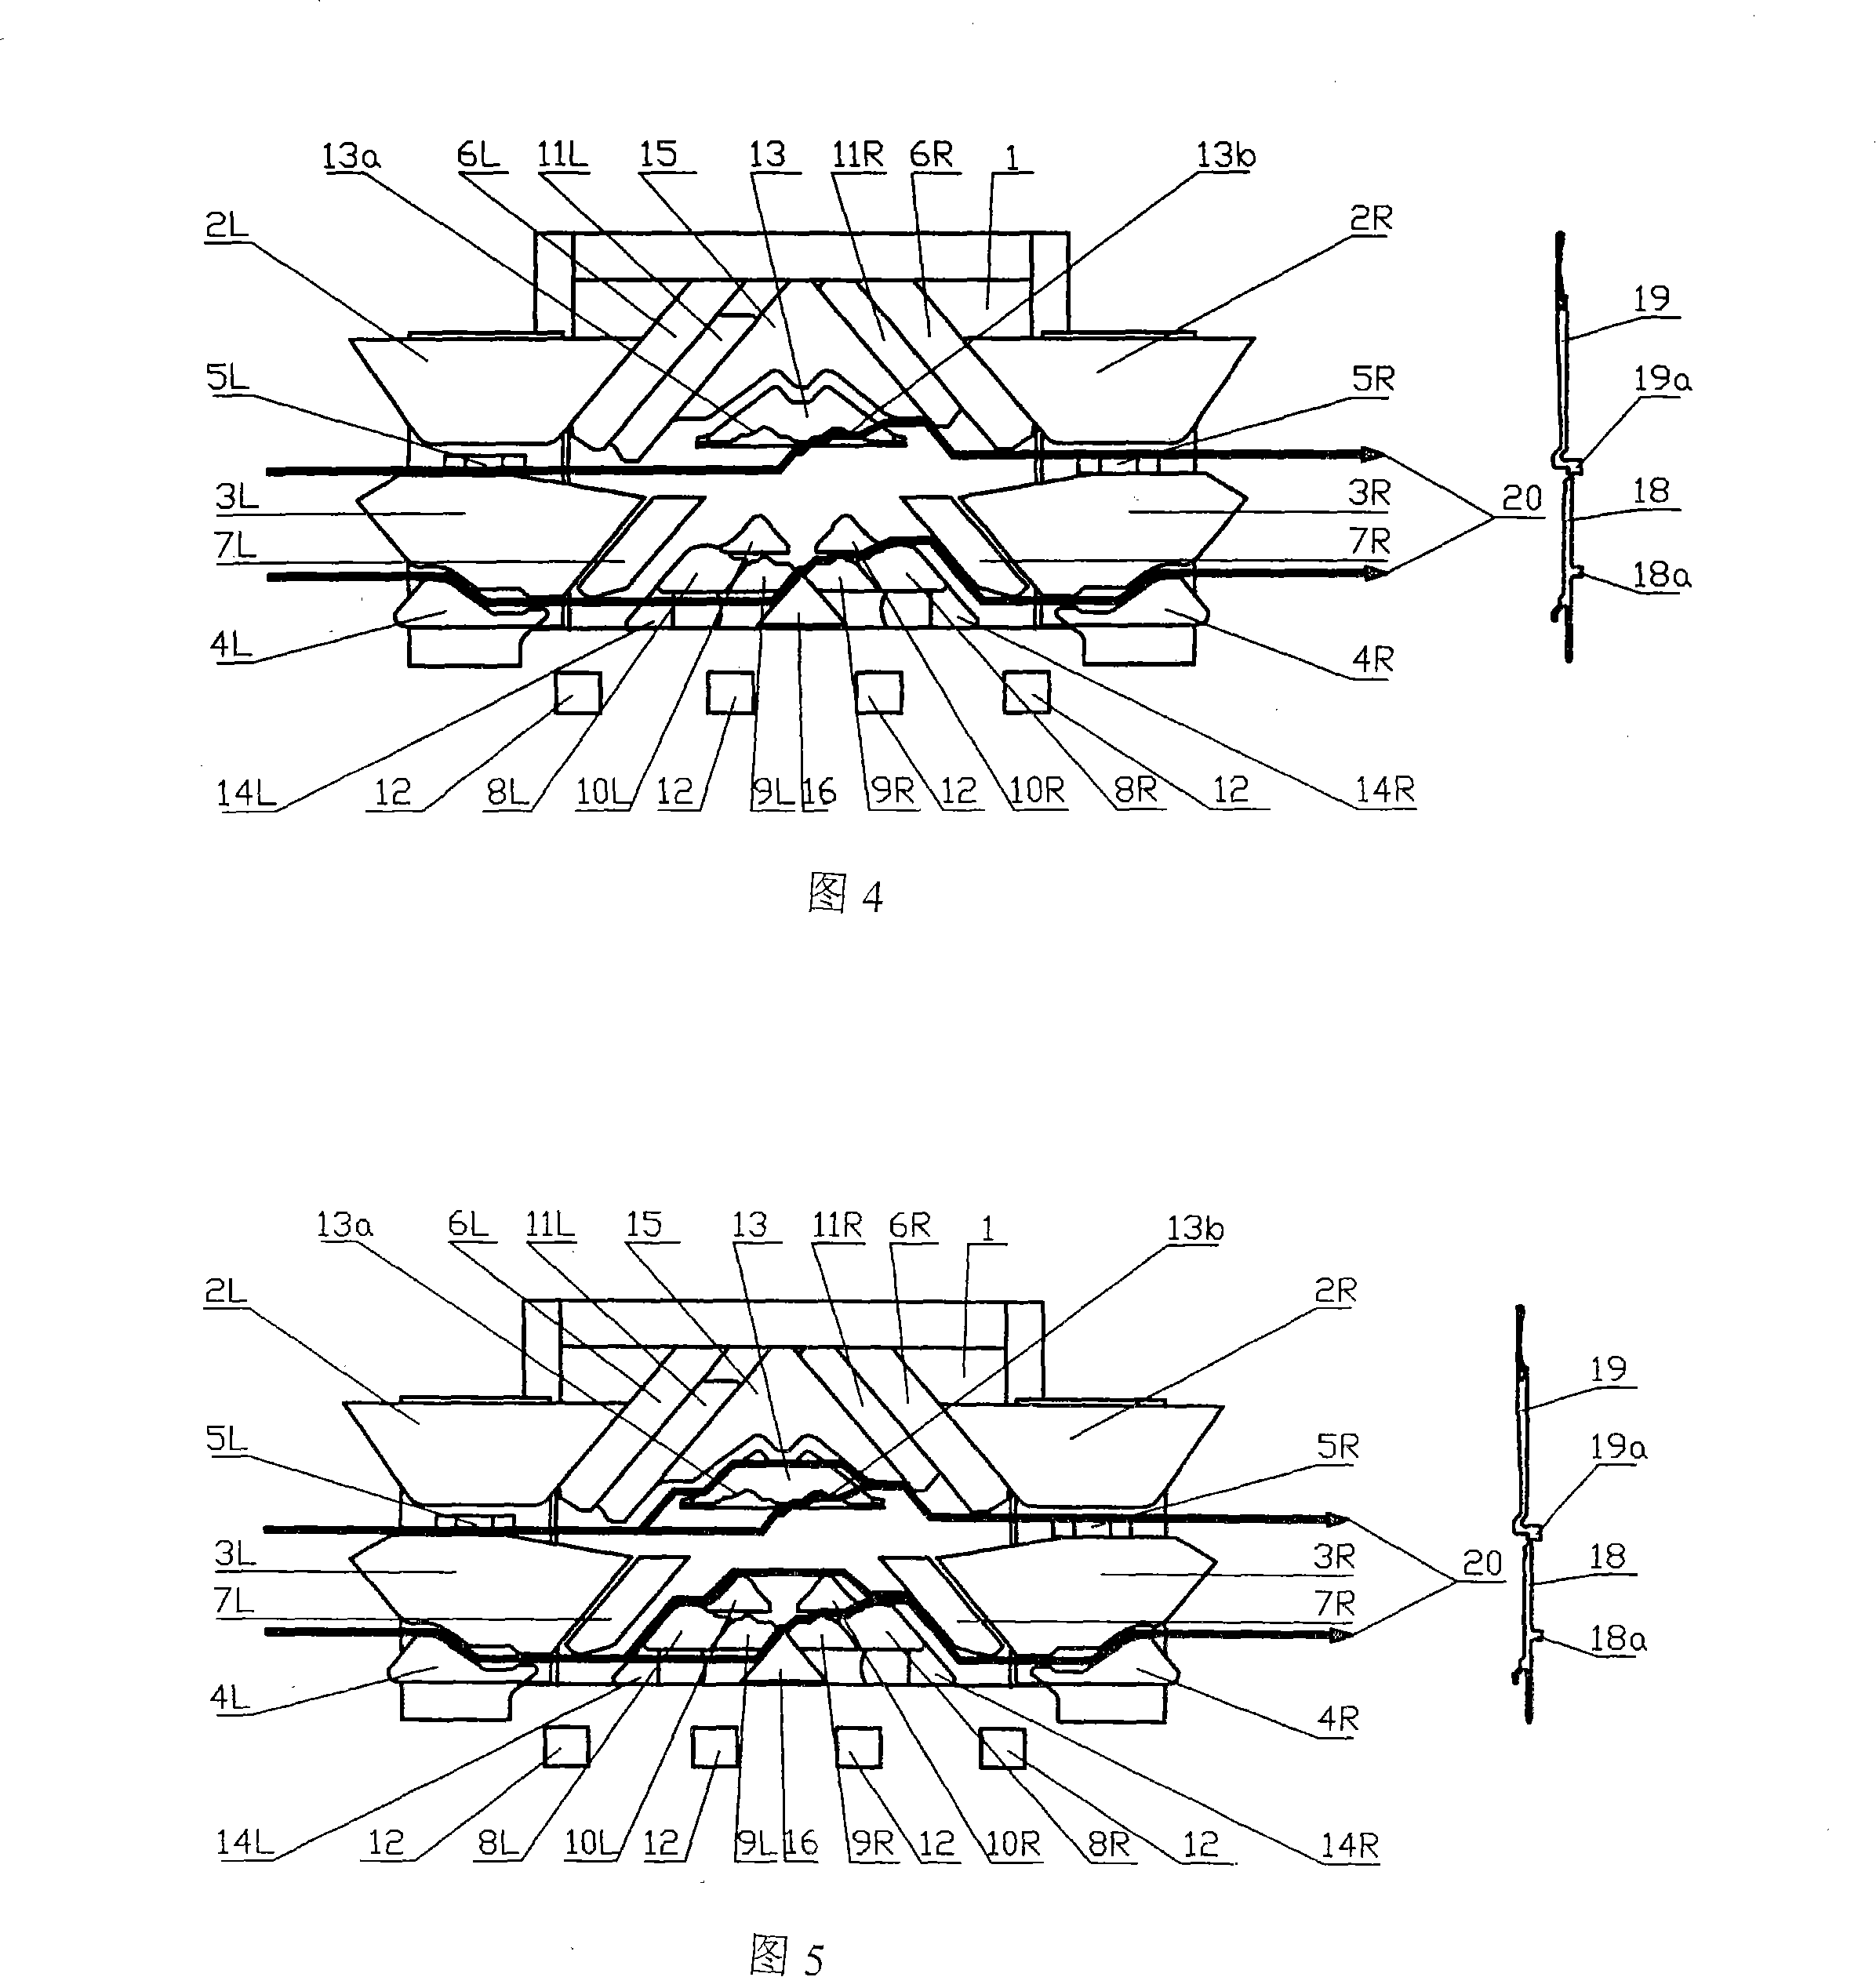 Triangle mechanism of computer plain flat knitter